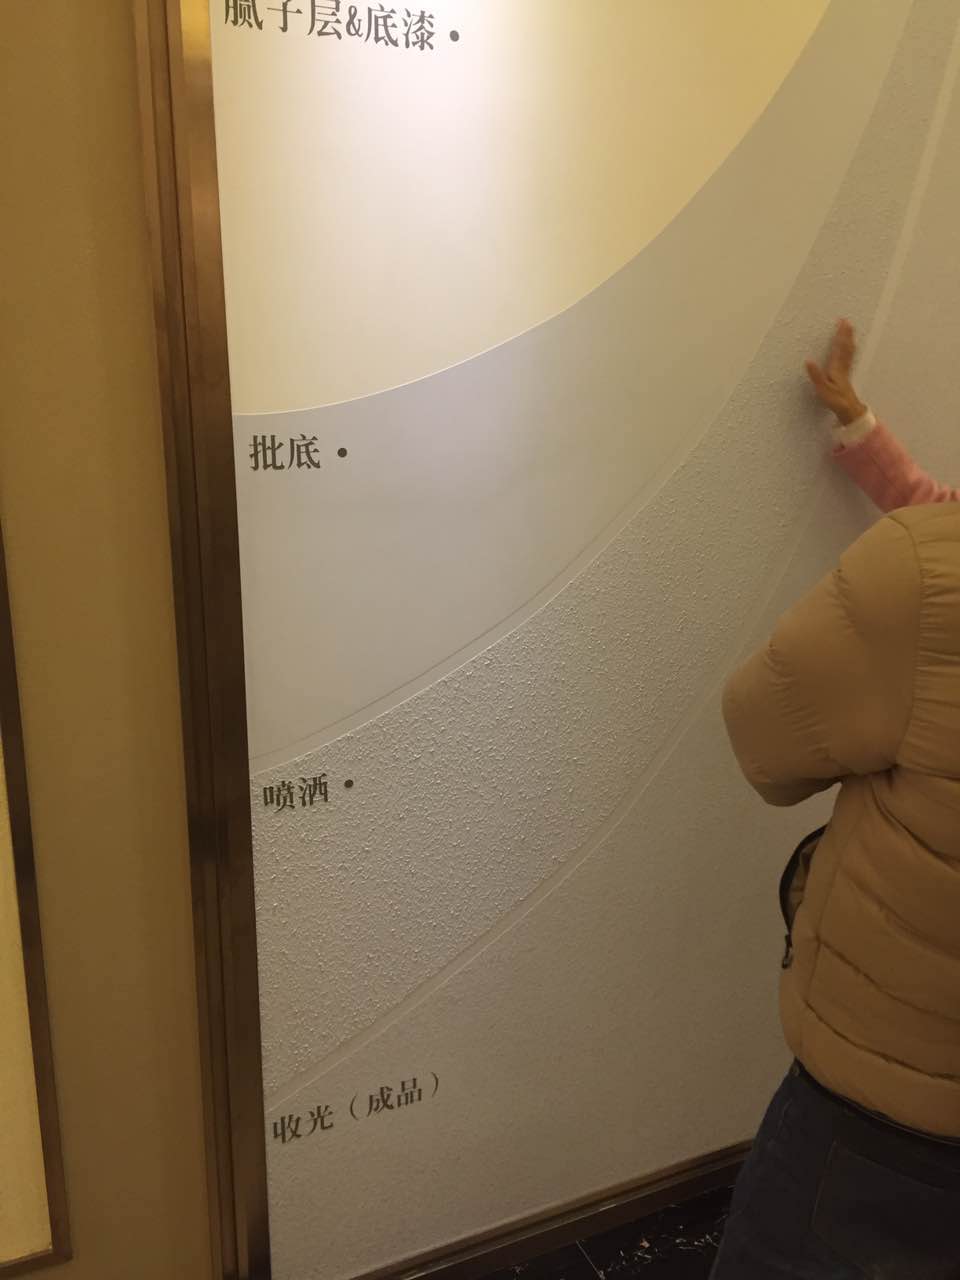 广州液体壁纸厂家广州液体壁纸 哪里有液体墙纸卖 广州液体墙纸